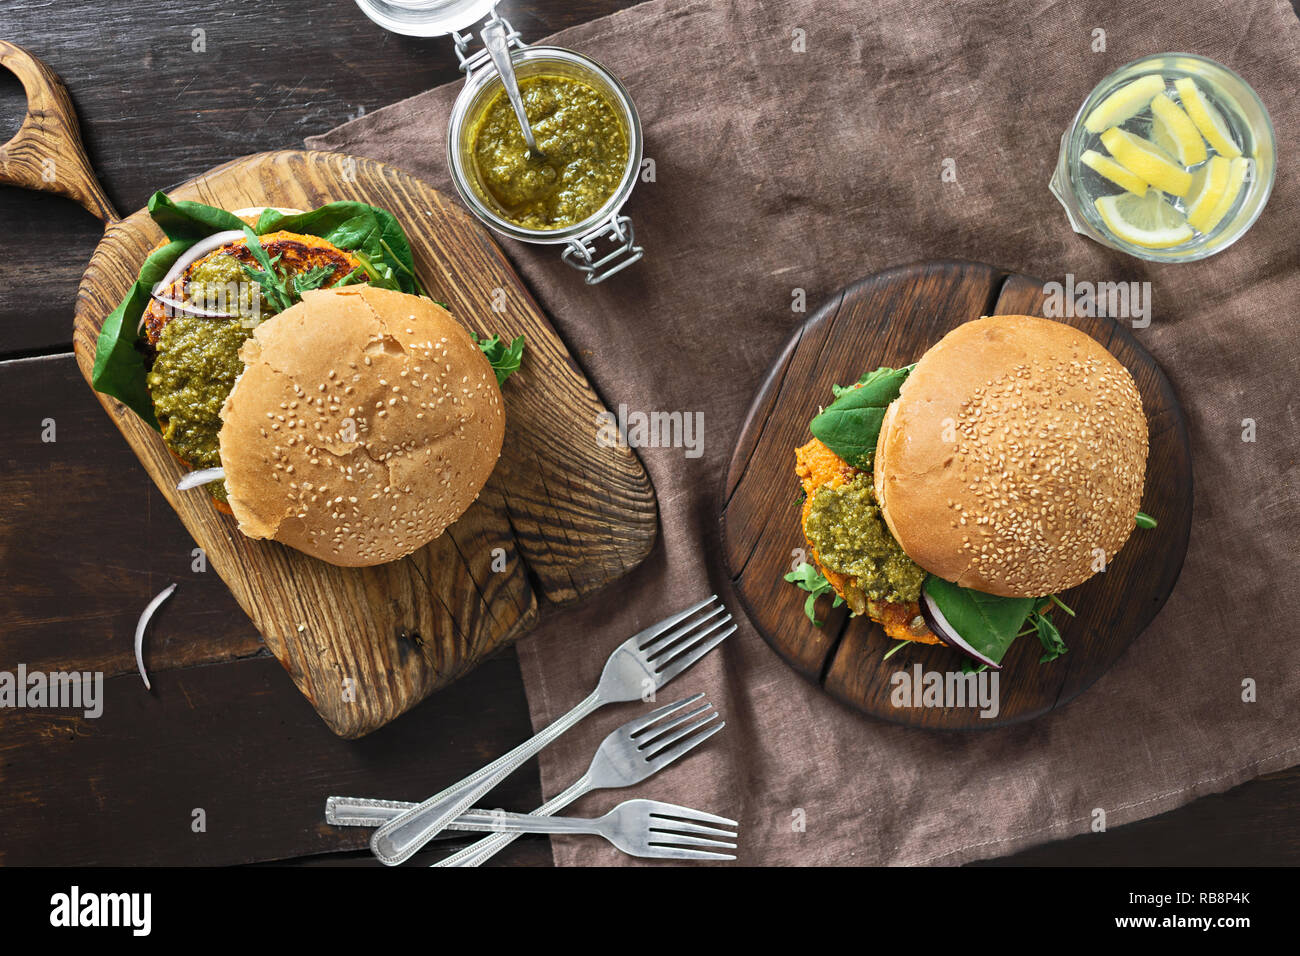 Burger végétarien avec escalope de citrouille, Épinards, roquette et pesto végétarienne vue d'en haut. Concept de l'alimentation végétarienne saine Banque D'Images